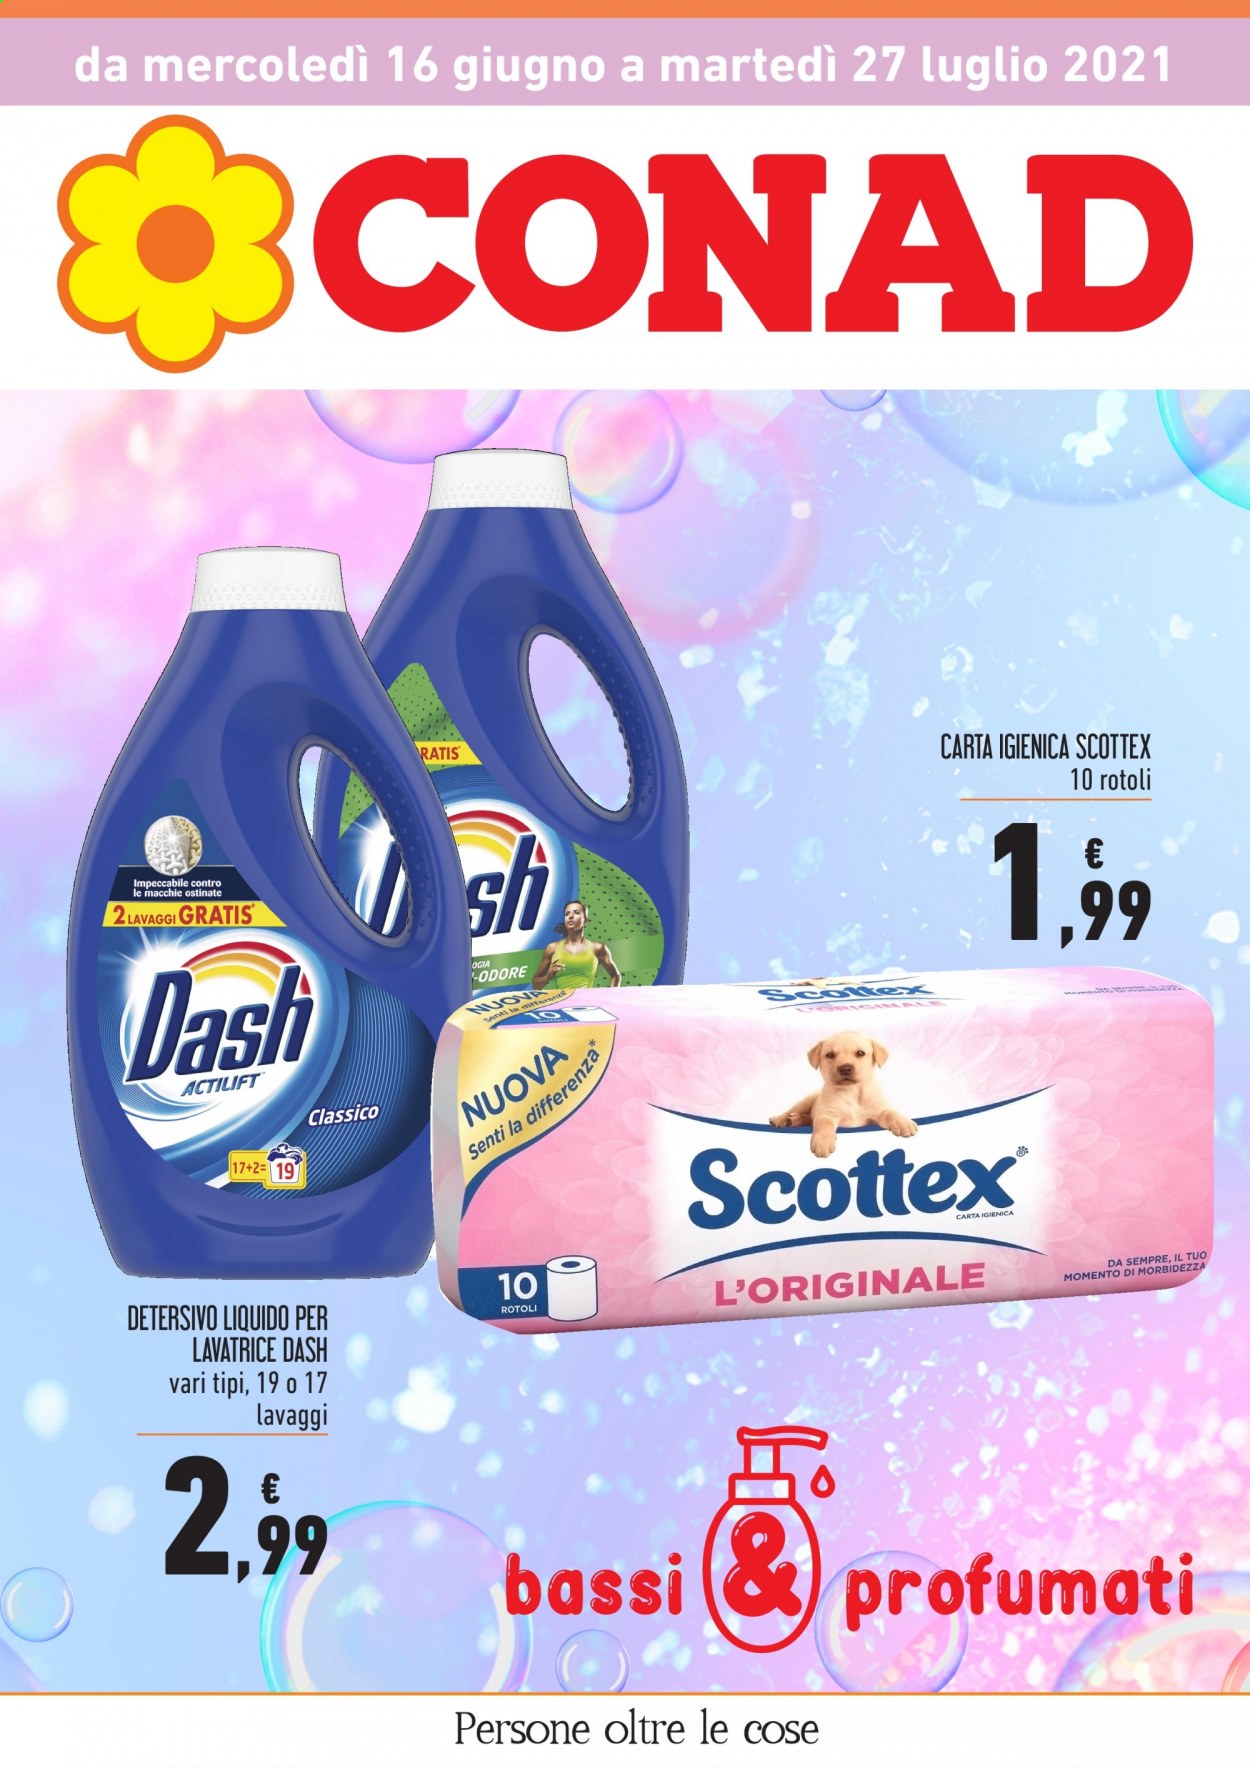 thumbnail - Volantino Conad - 16/6/2021 - 27/7/2021 - Prodotti in offerta - carta igienica, Scottex, detersivo liquido per lavatrice, Dash. Pagina 1.